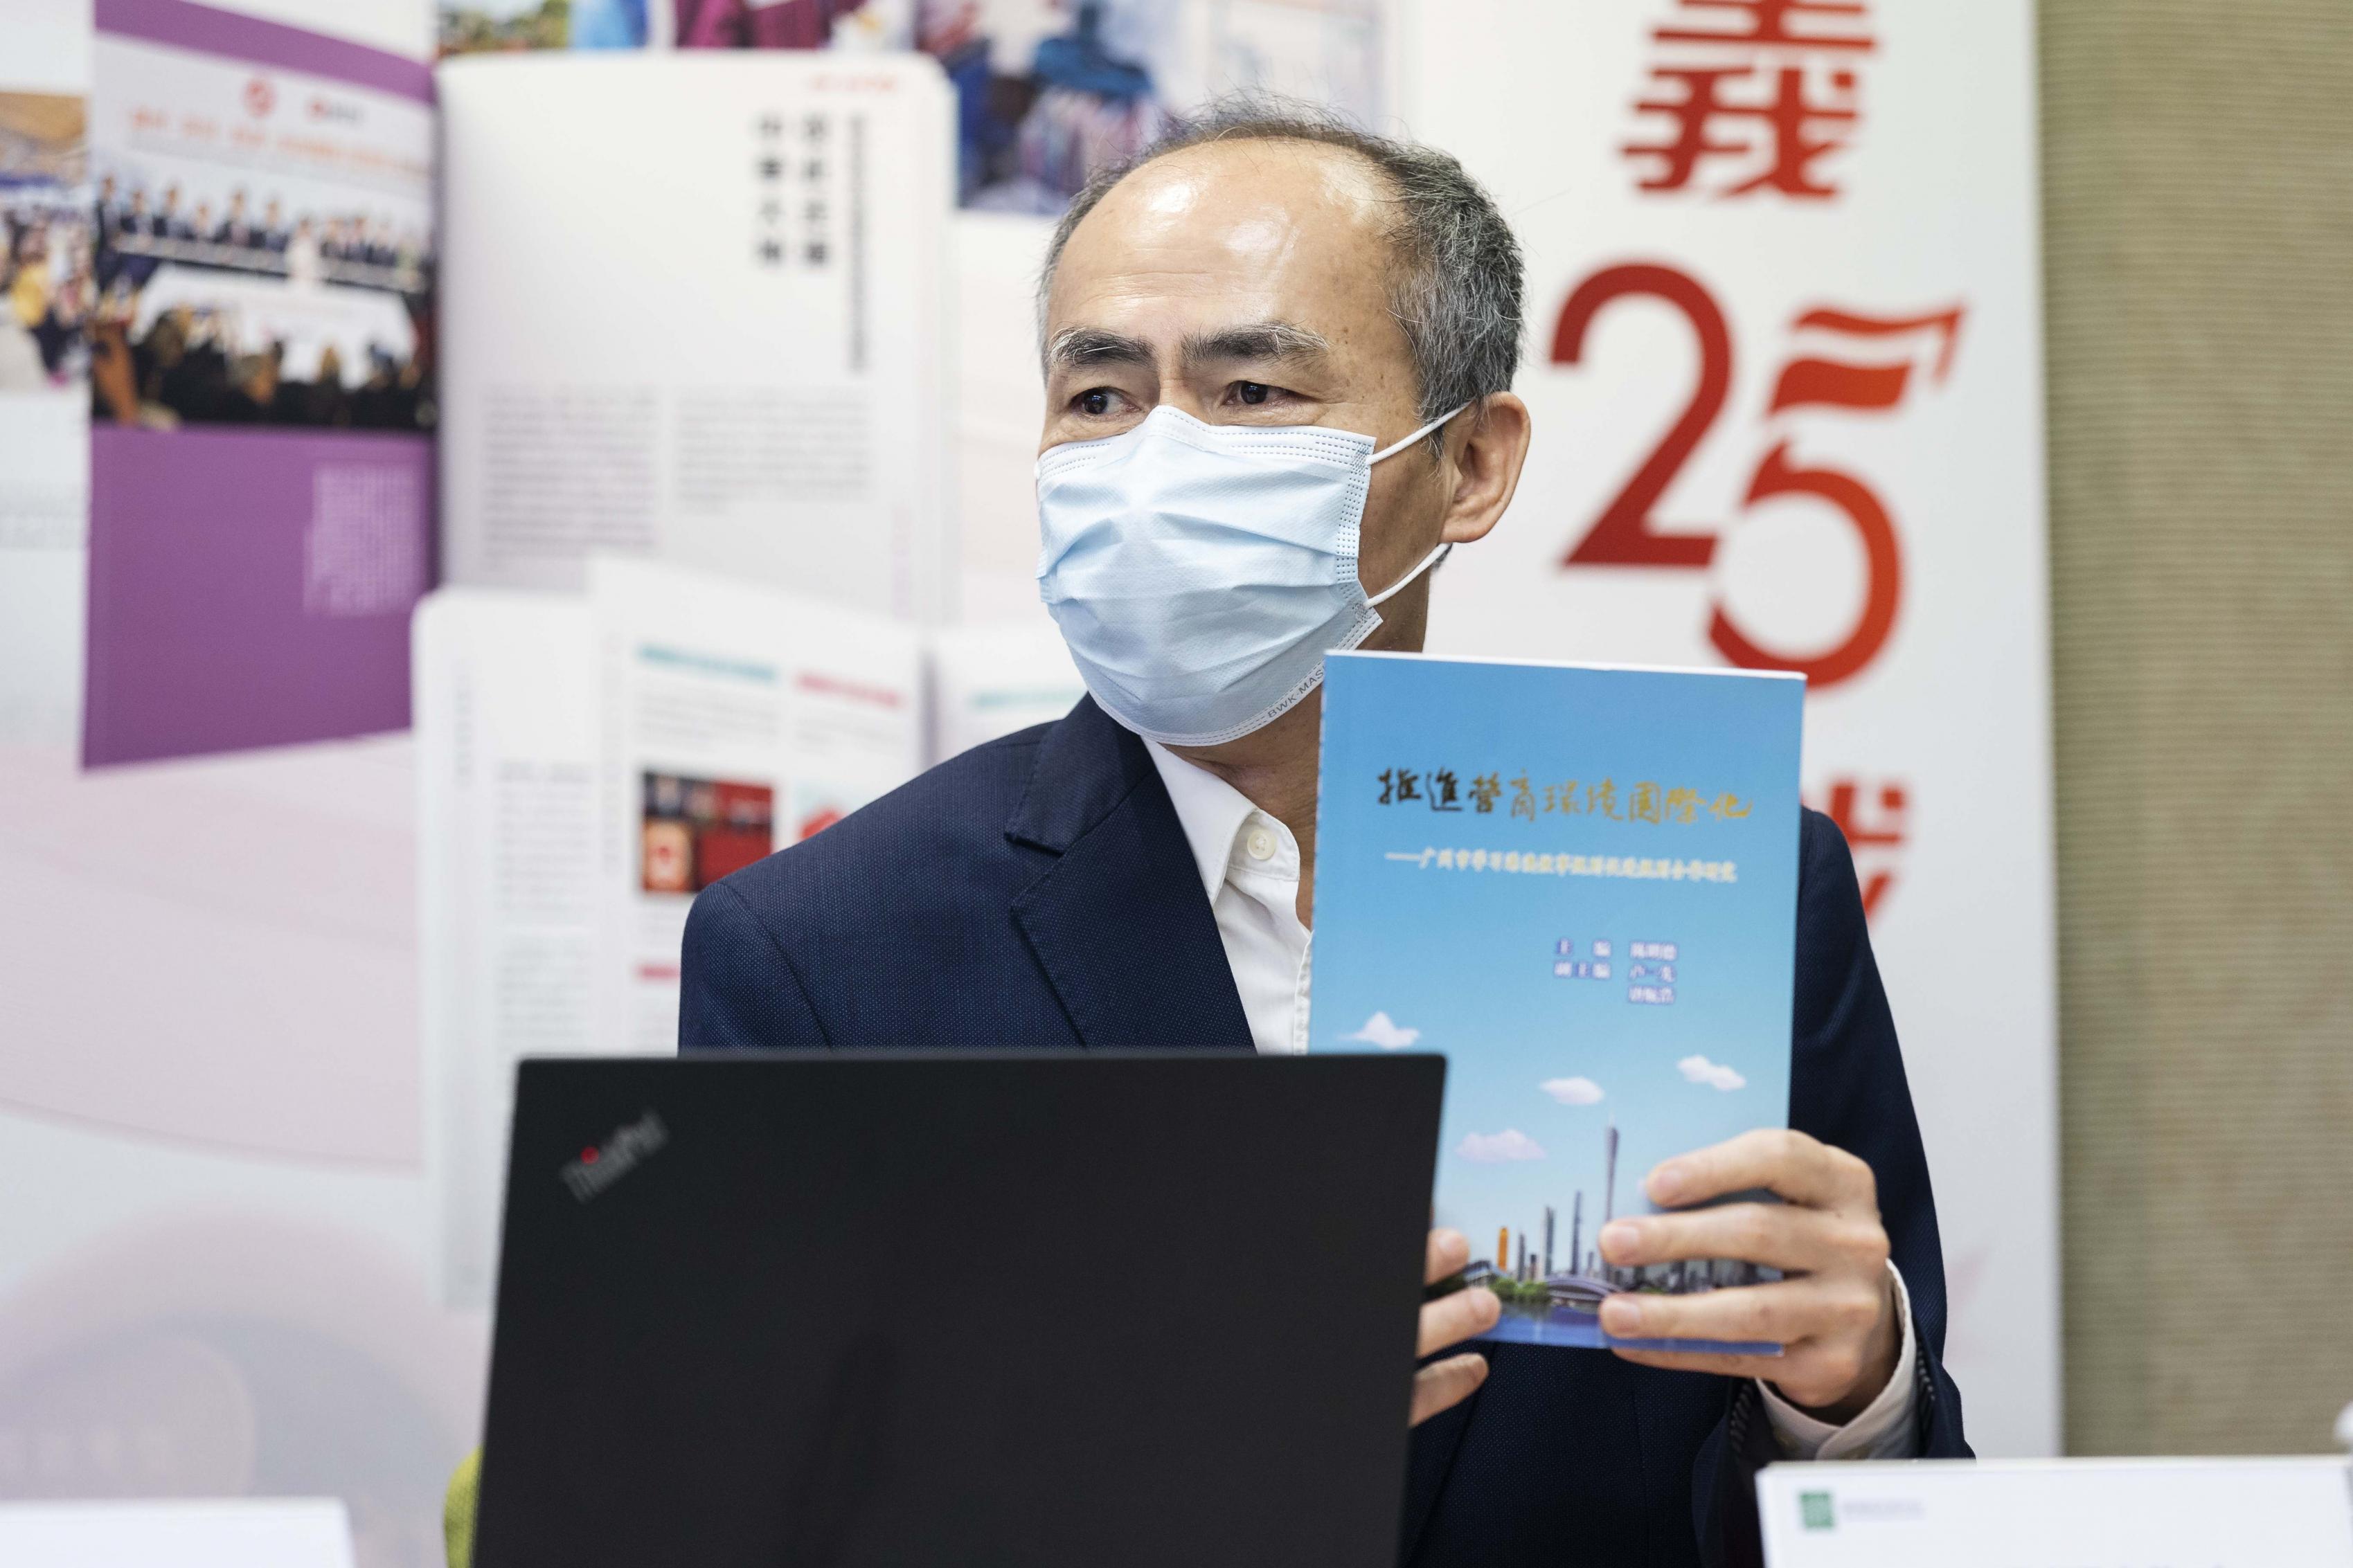 謝國樑博士分享由廣州市政府部門寫於2009年編寫出版的《推進營商環境國際化》。